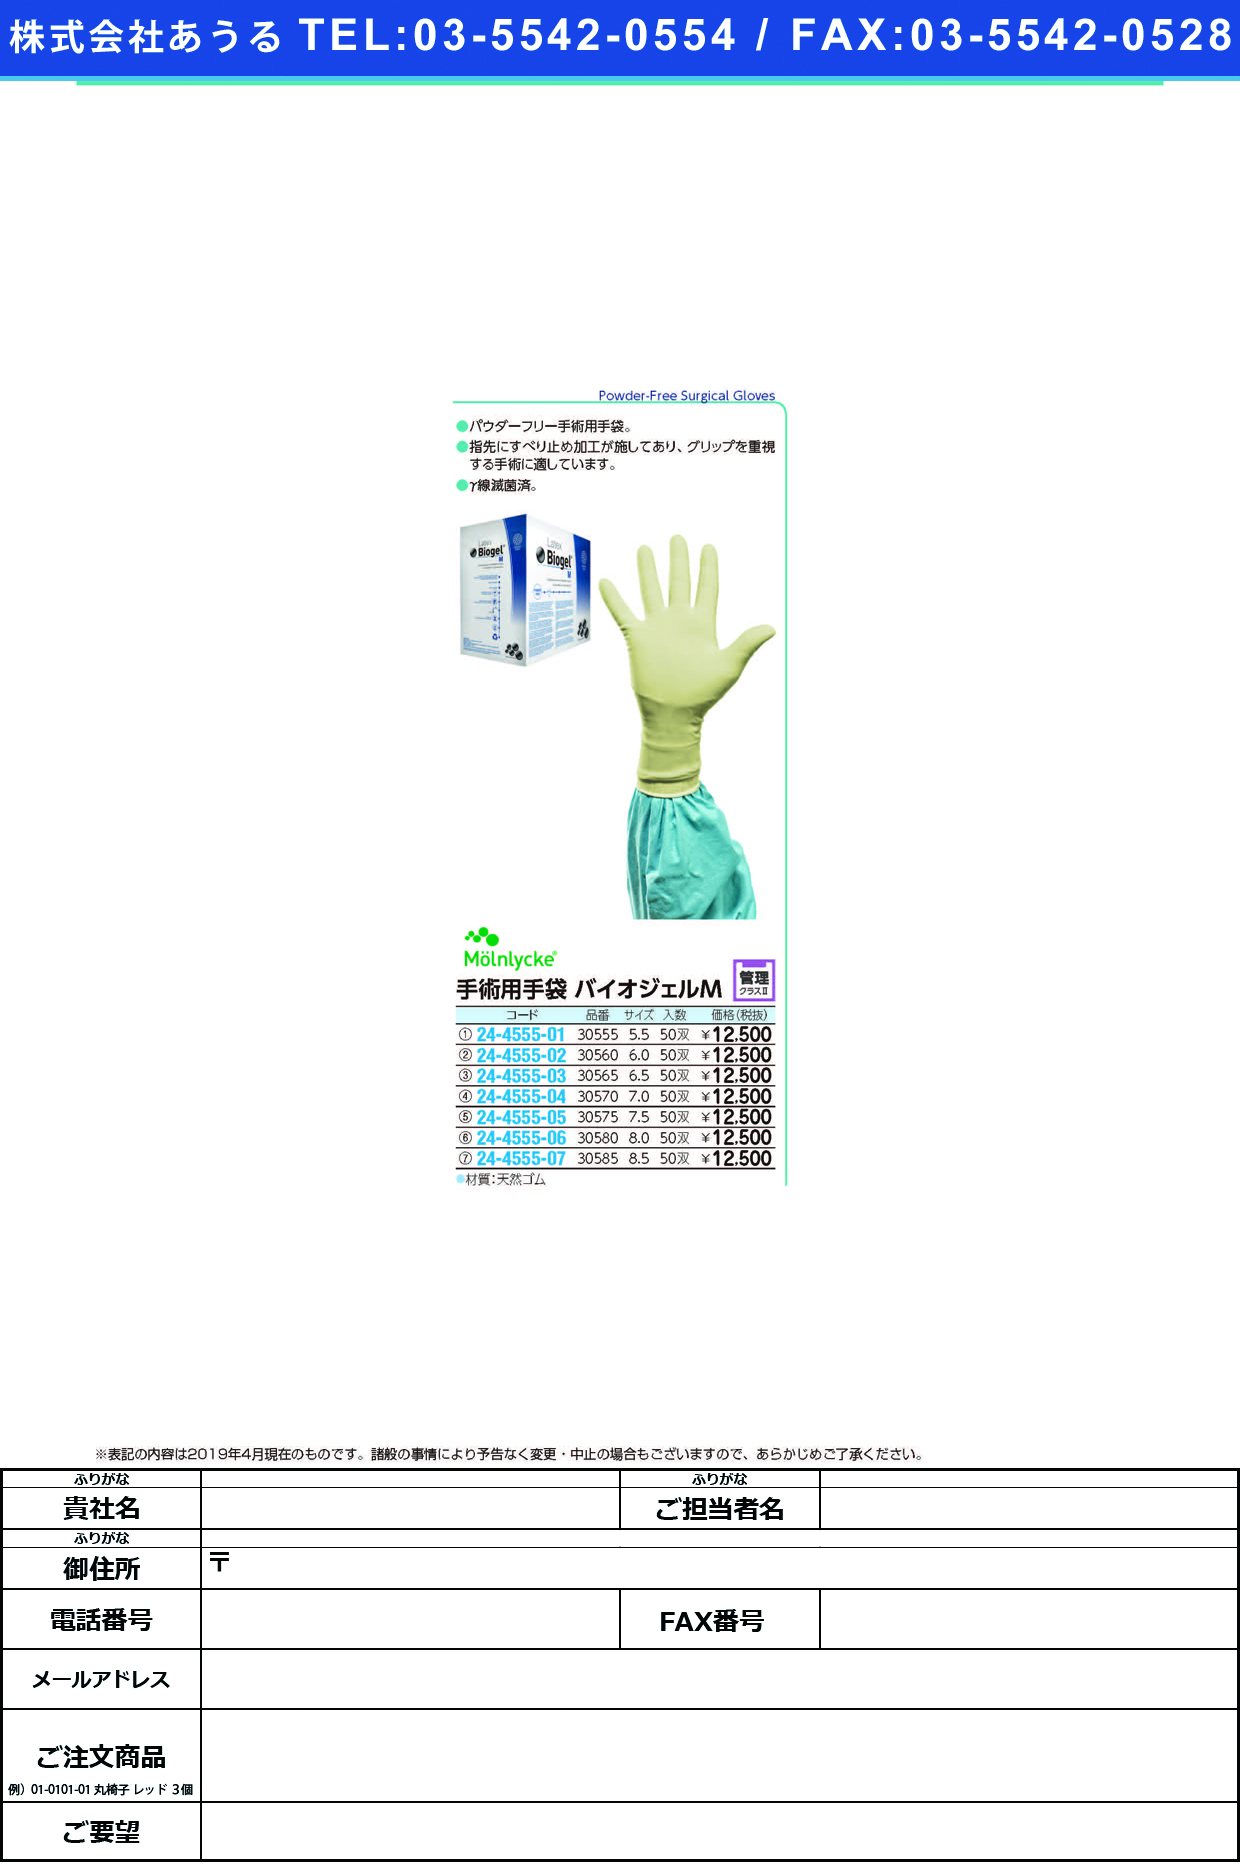 手術用手袋バイオジェルＭ 30570(7.0)50ｿｳｲﾘ ﾊﾞｲｵｼﾞｪﾙM(メンリッケヘルスケア)